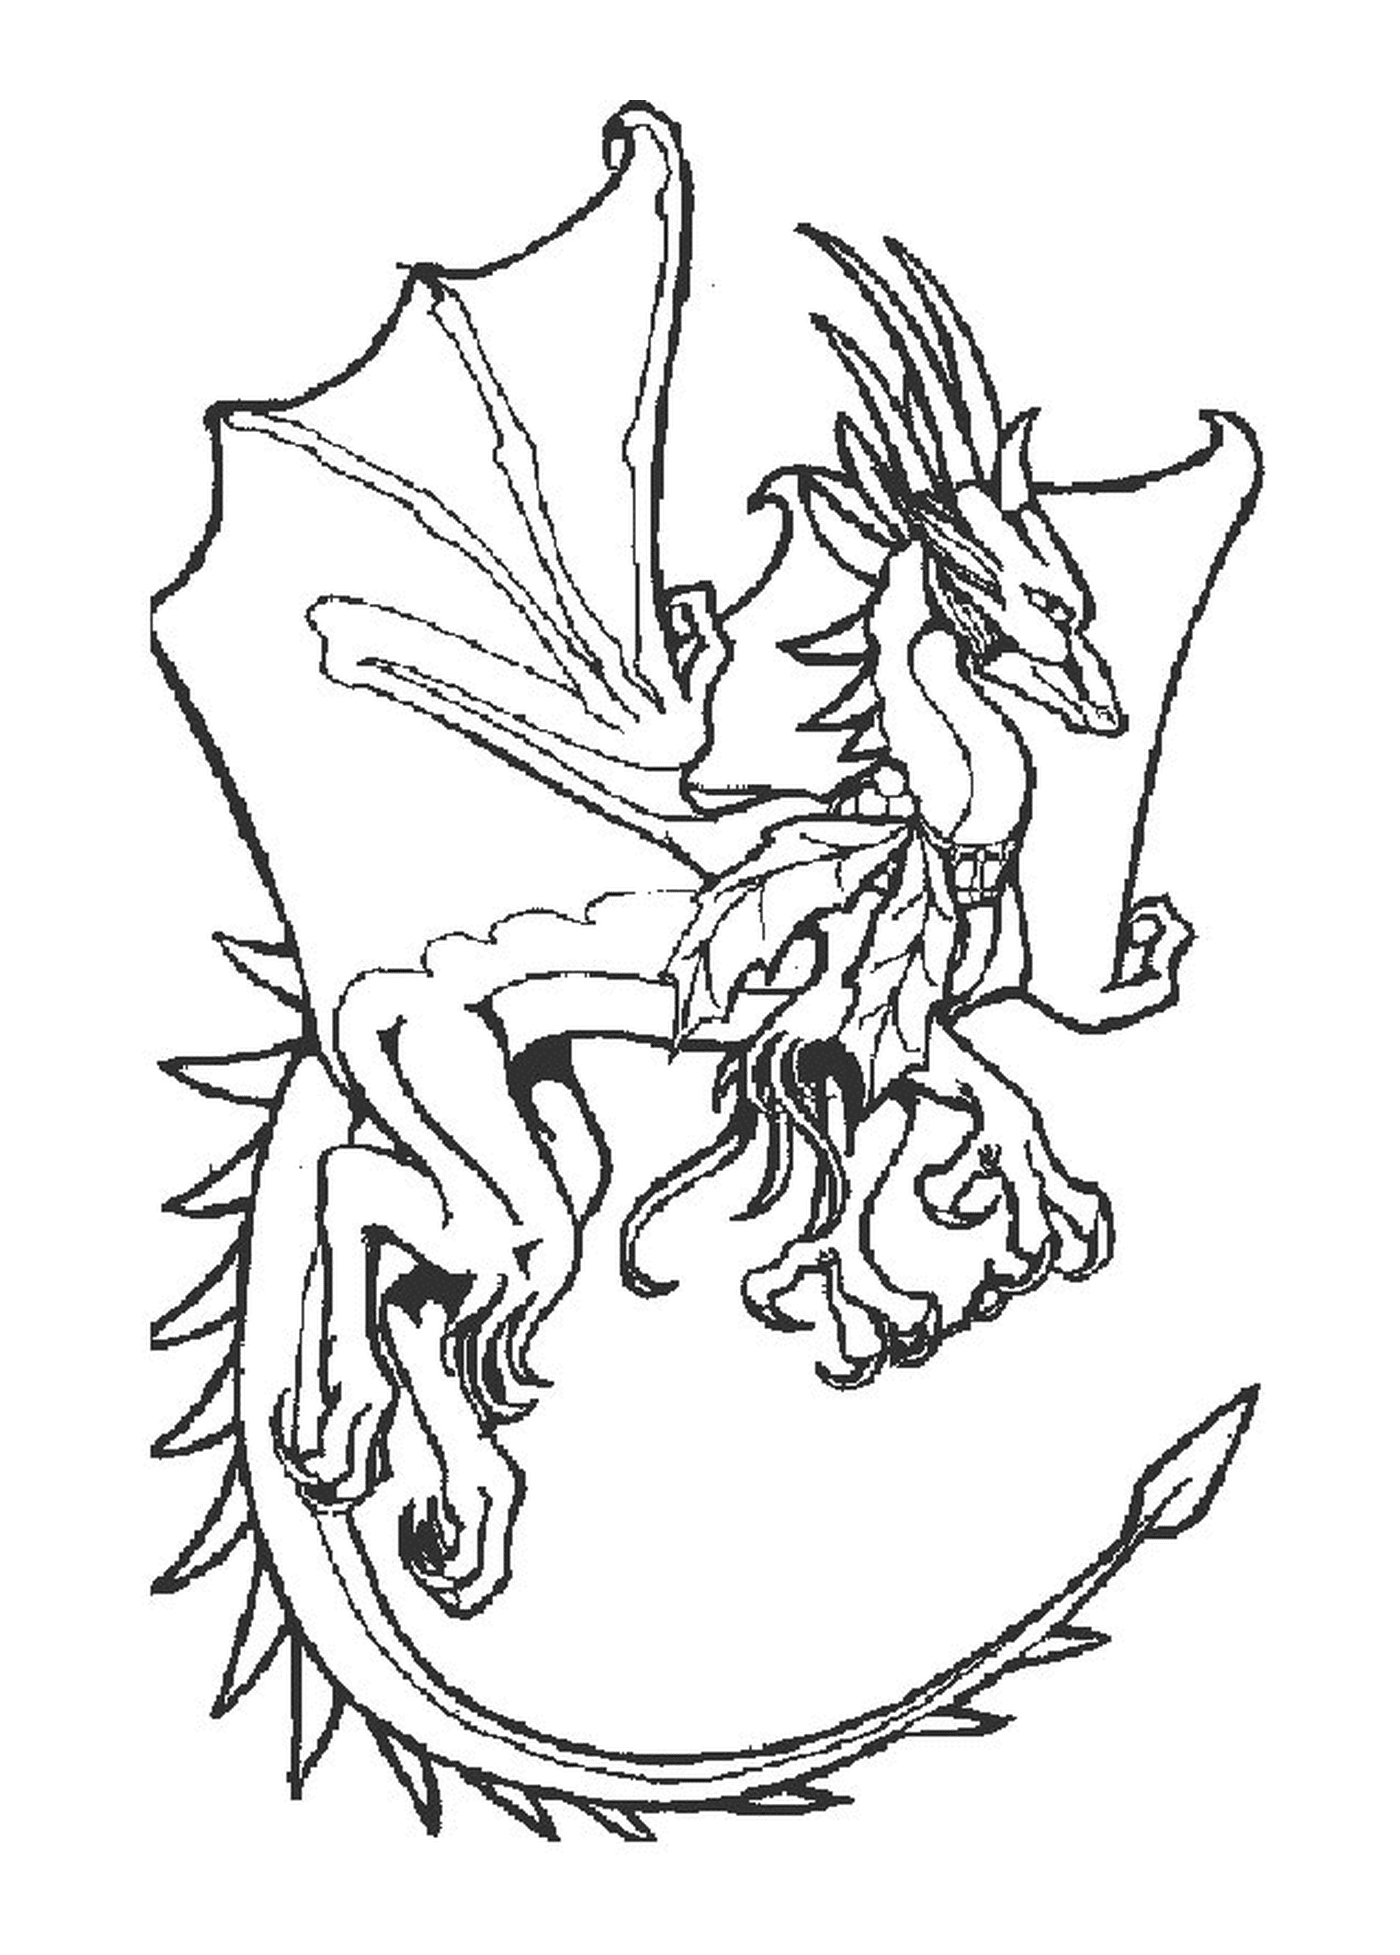  Um dragão com asas grandes 